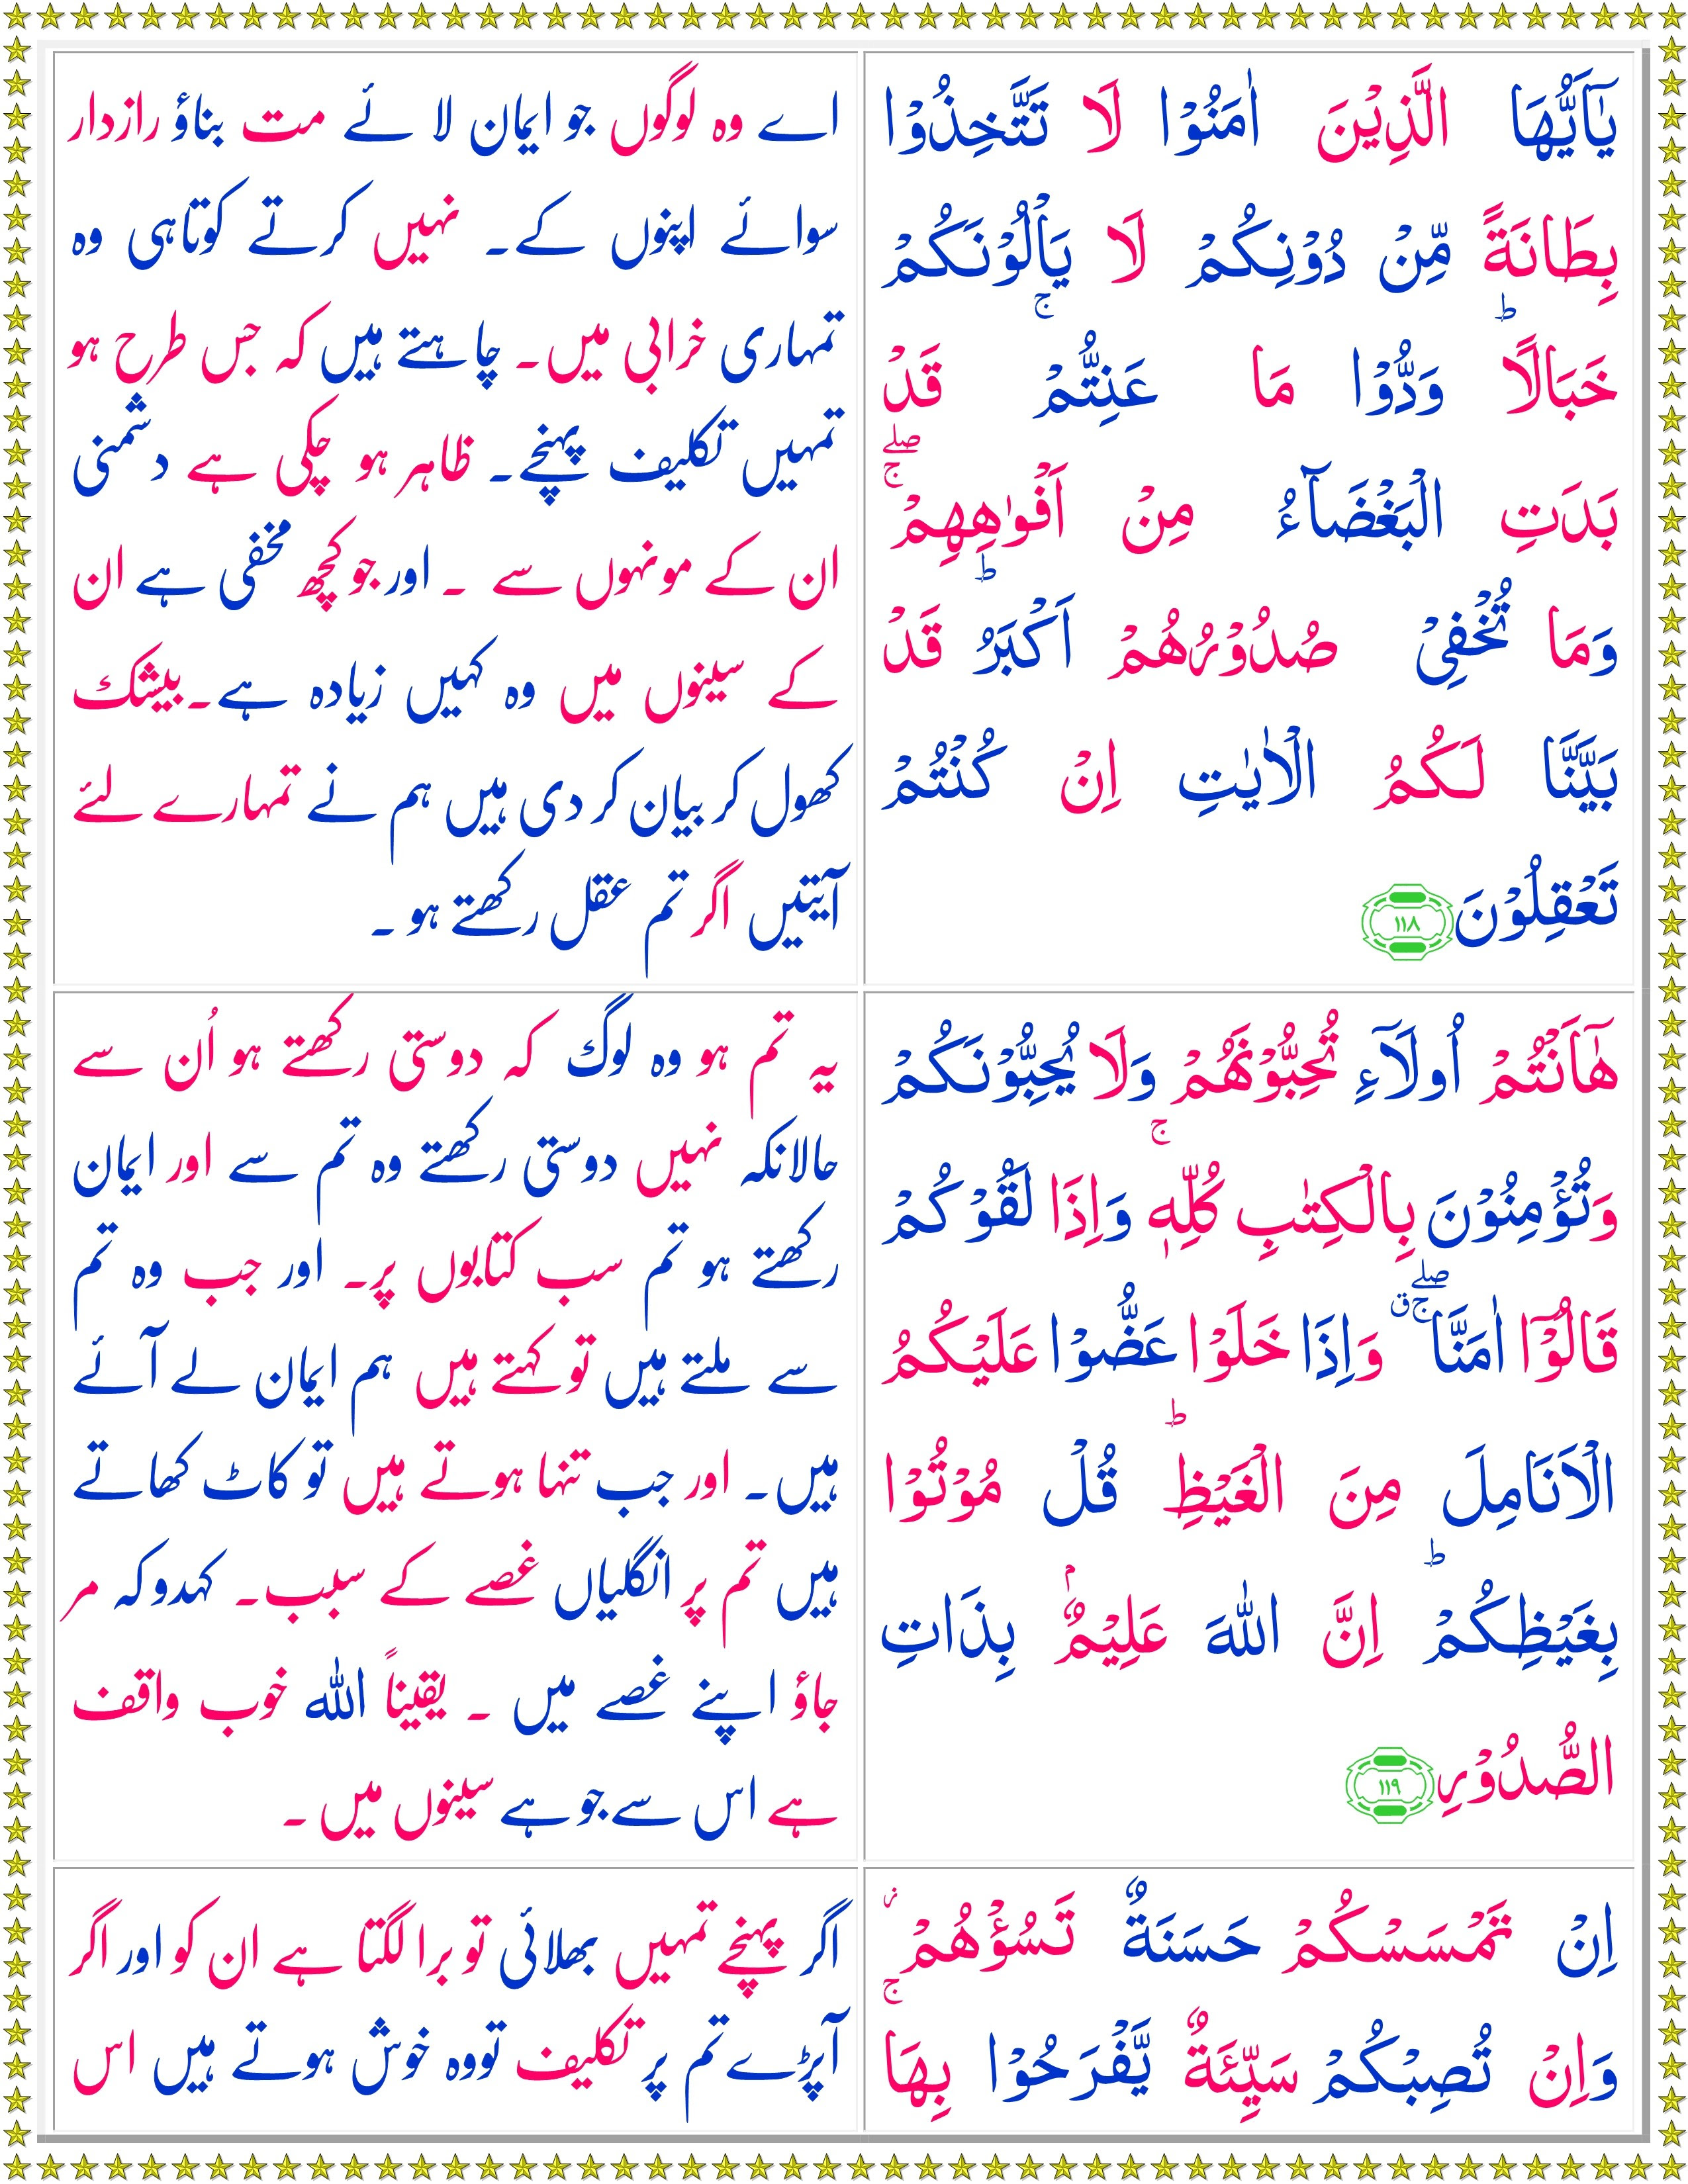 Surah Al Imran Ayat 26 27 With Urdu Translation Kumpulan Surat Penting